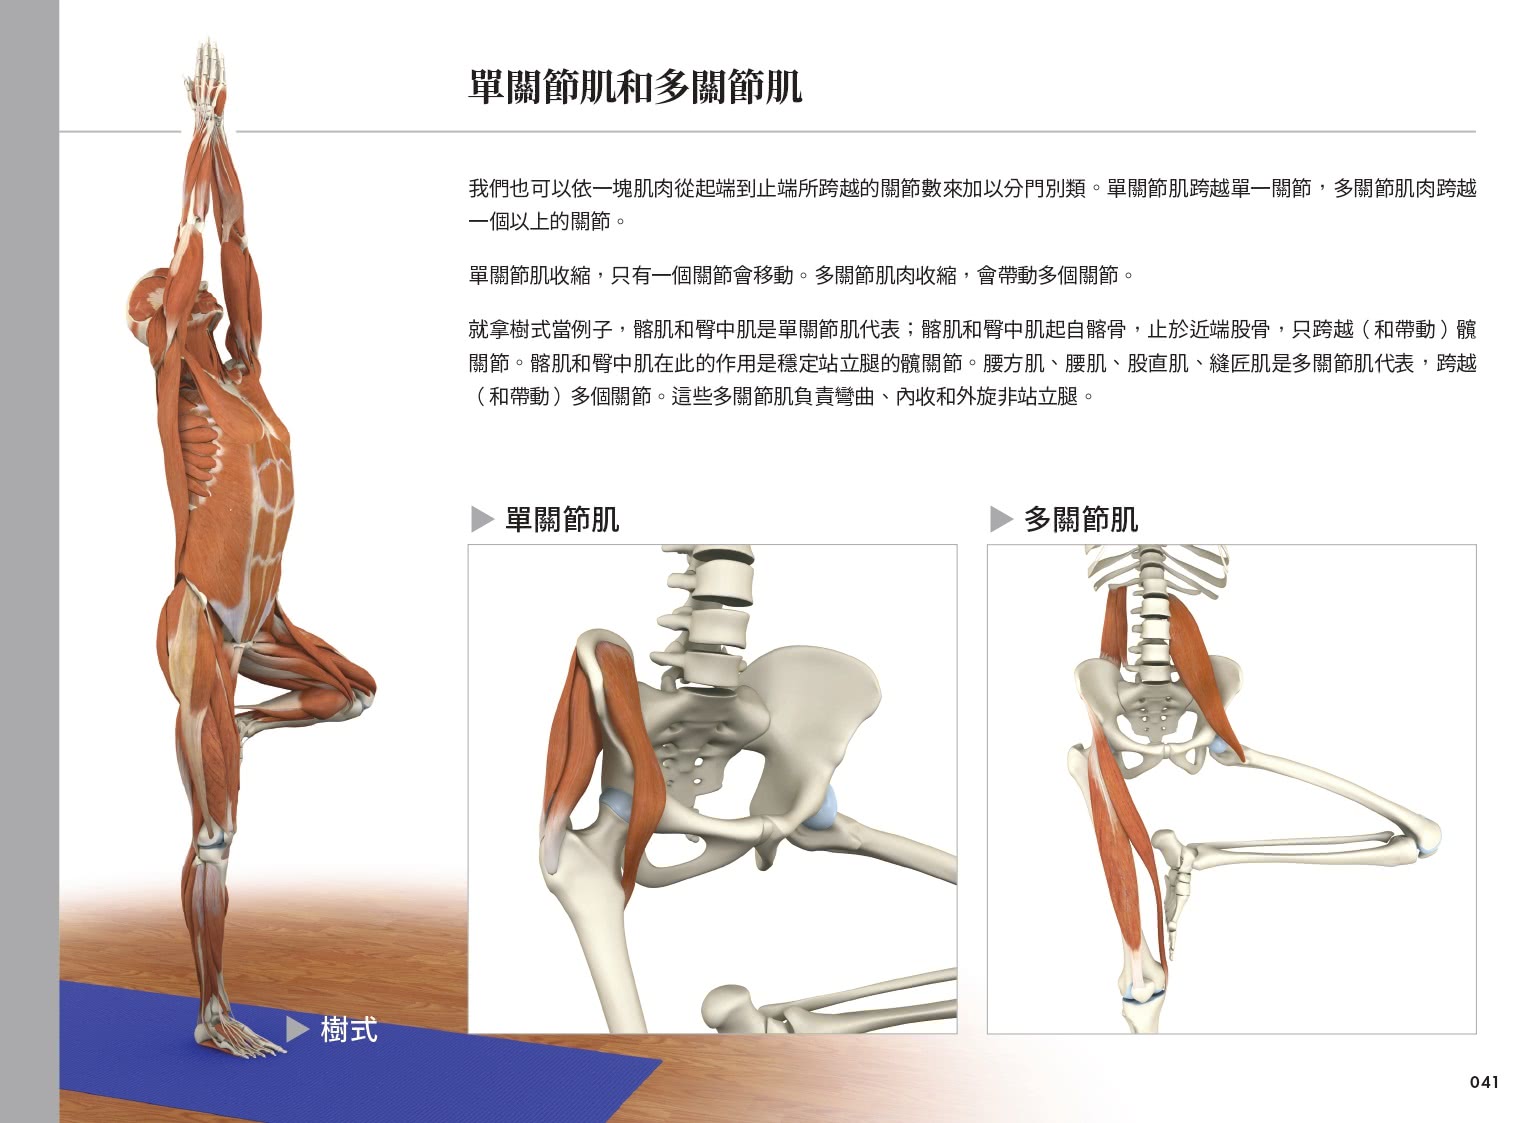 雷隆醫師的瑜伽解剖Ⅰ：關鍵肌肉